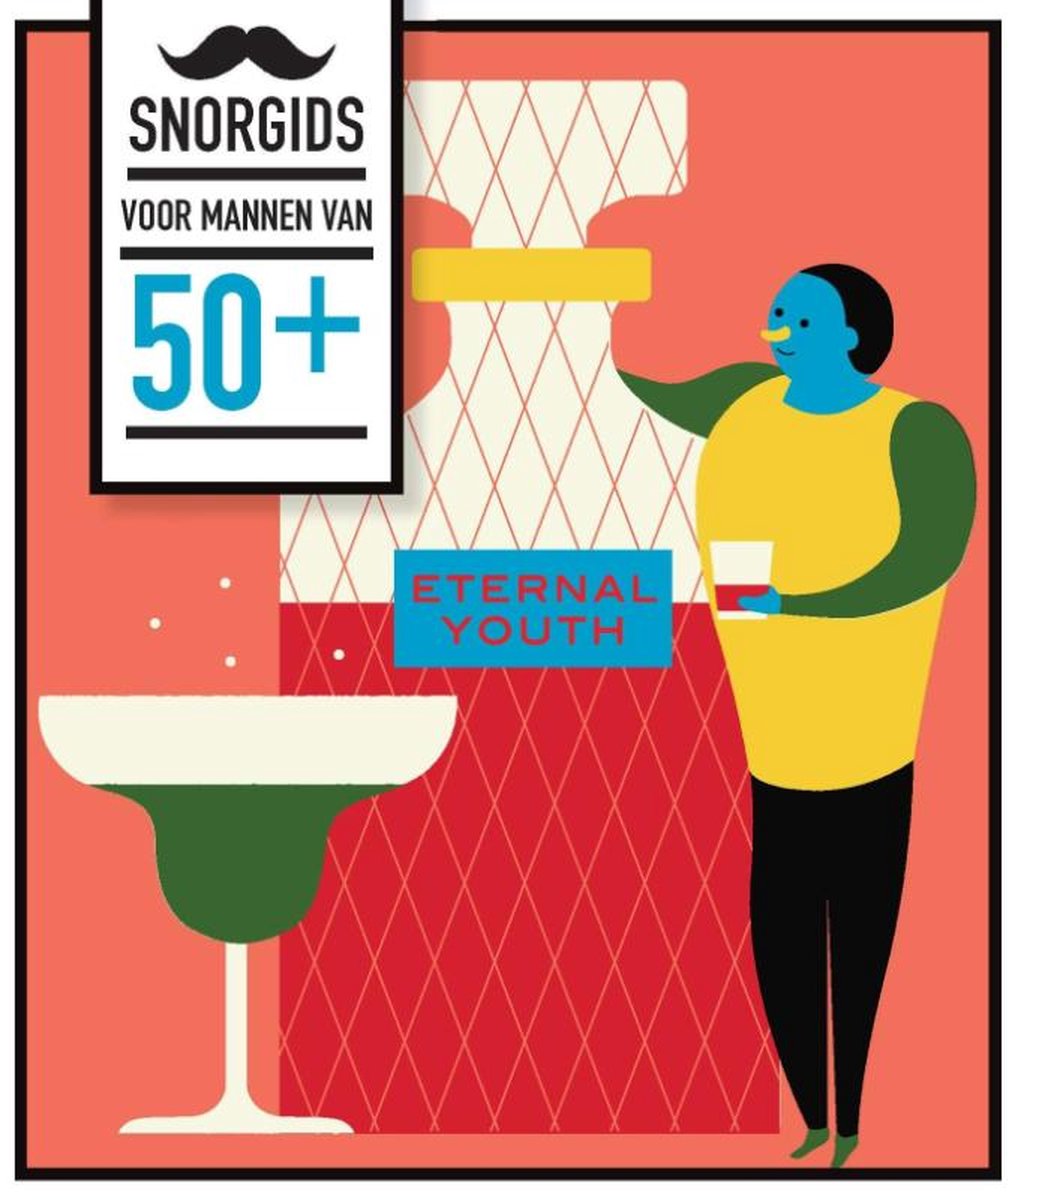 Snorgids voor mannen van 50+